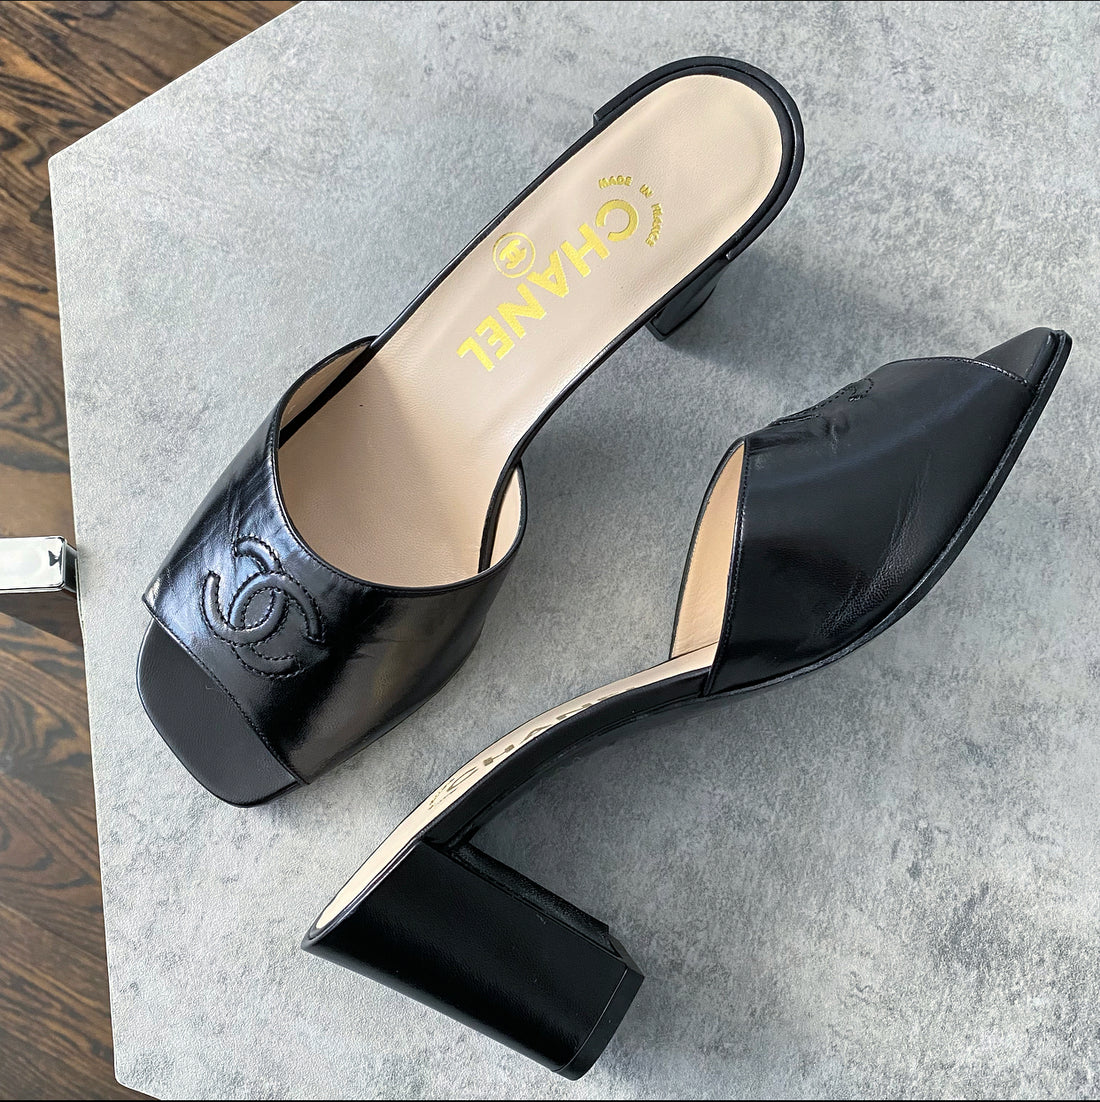 CHANEL, Shoes, Black Chanel Sequin Mule Sandals Size 37